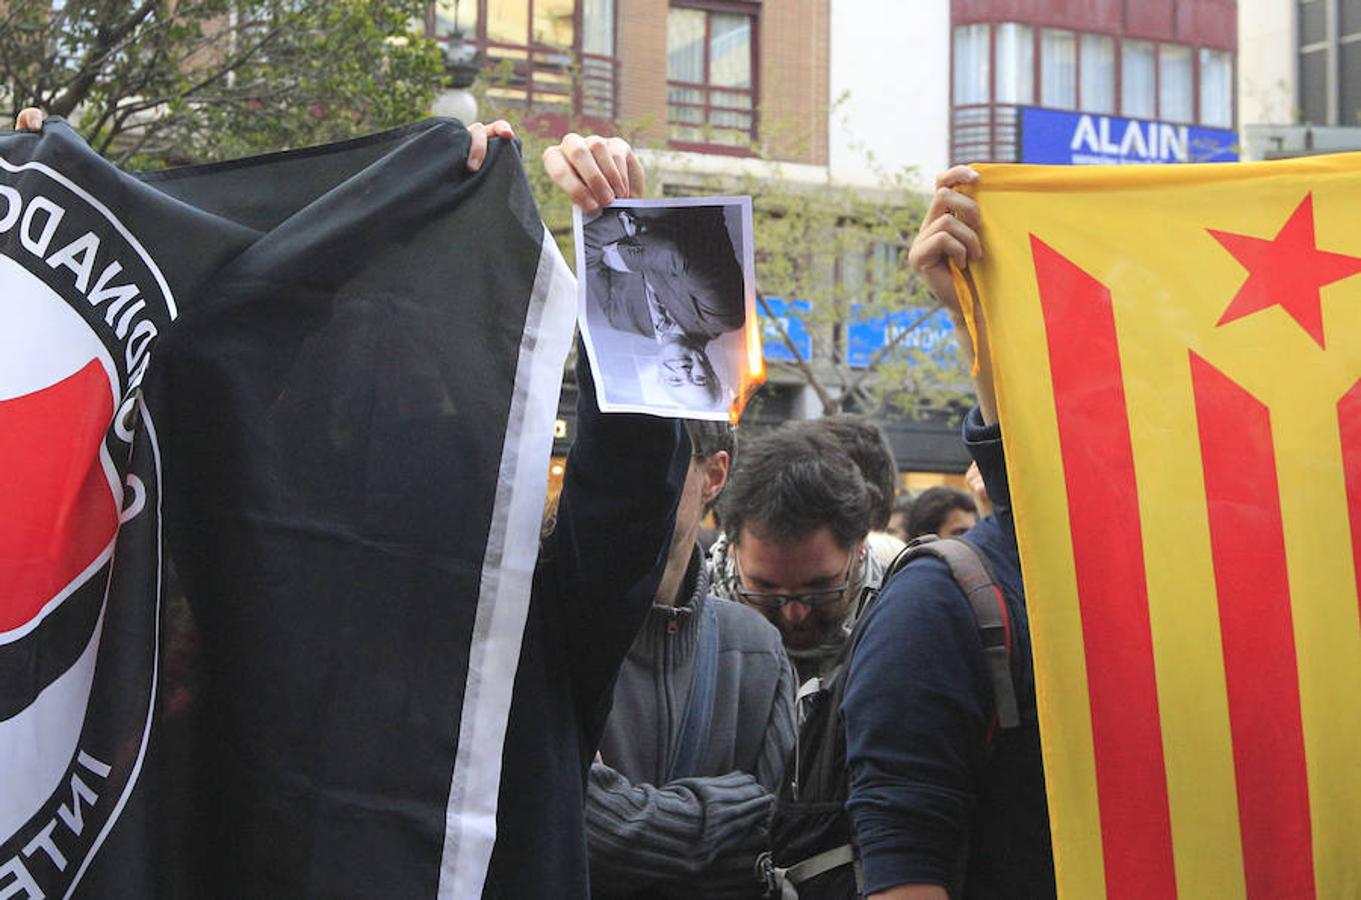 Cargos de Compromís jalearon este lunes la celebración de una concentración en Valencia a favor del independentismo catalán y en protesta por el encarcelamiento de cargos catalanes. También el Bloc, el principal partido de Compromís, contribuyó en dar a conocer la protesta en la que participaron menos de 400 personas y en la que quemaron fotos del Rey, Rajoy y del juez del Tribunal Supremo Pedro Llarena ante la sede de la Delegación del Gobierno.